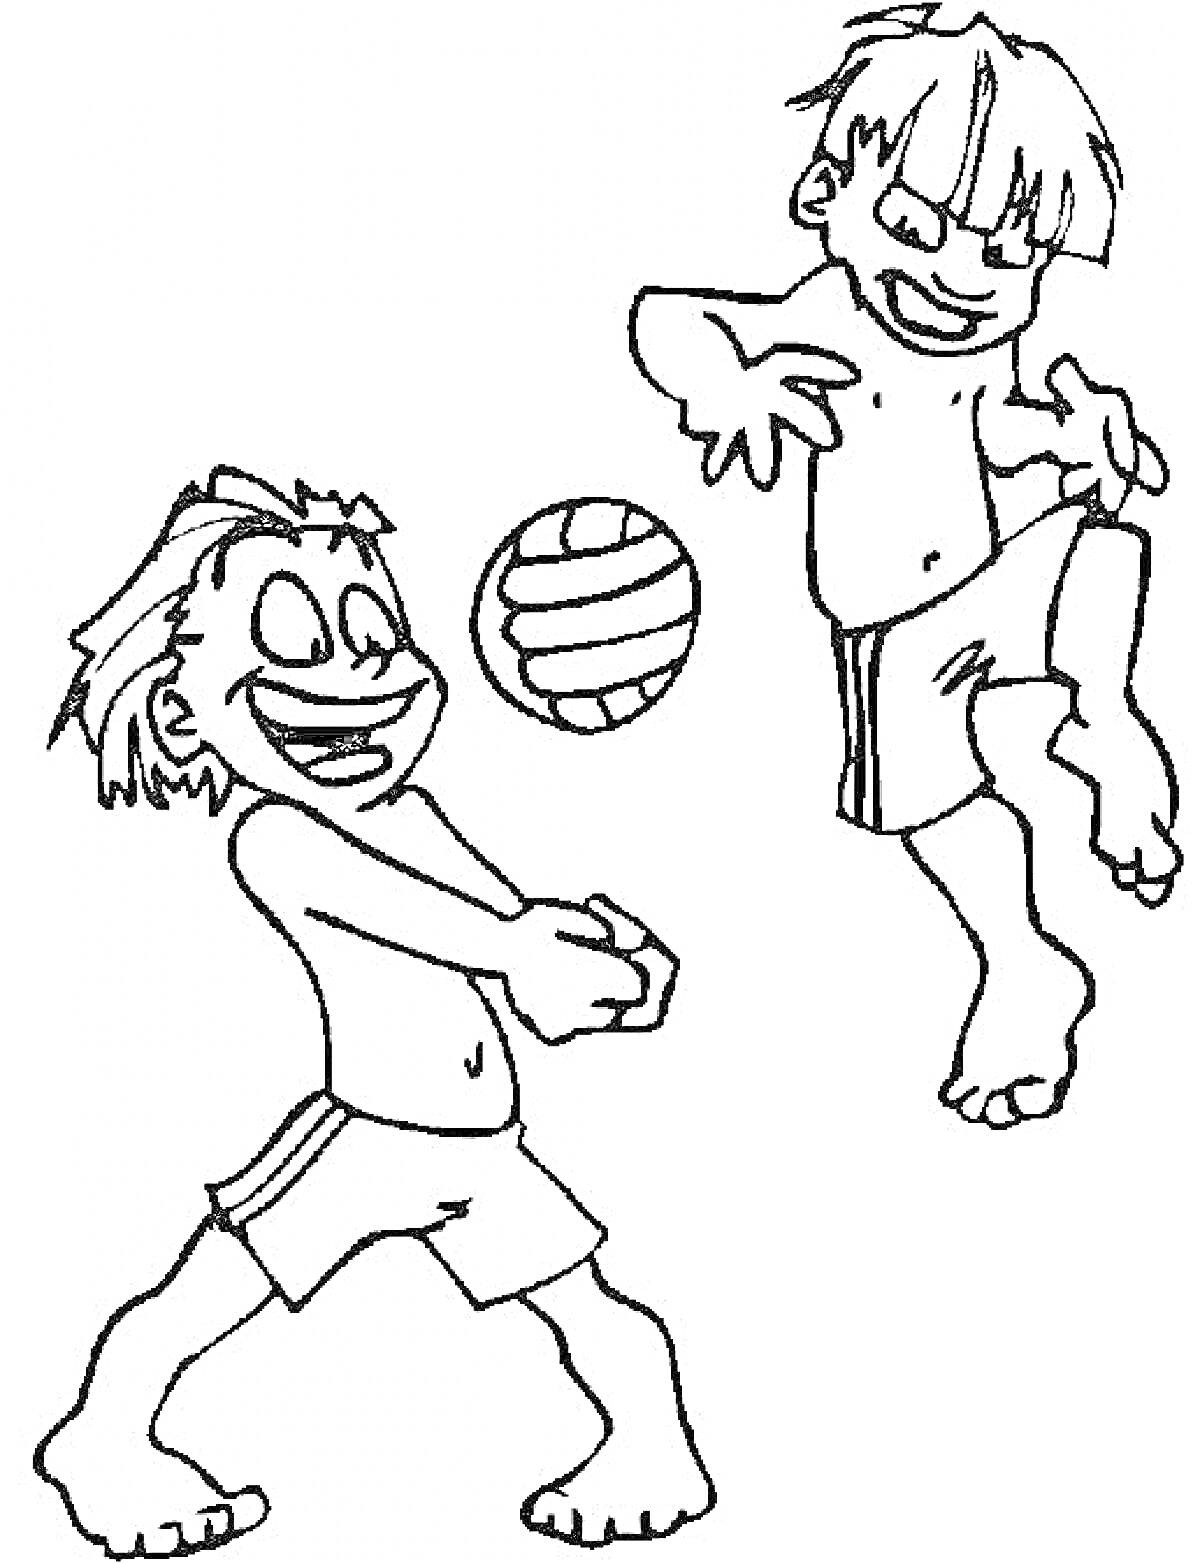 Раскраска Два мальчика играют в волейбол